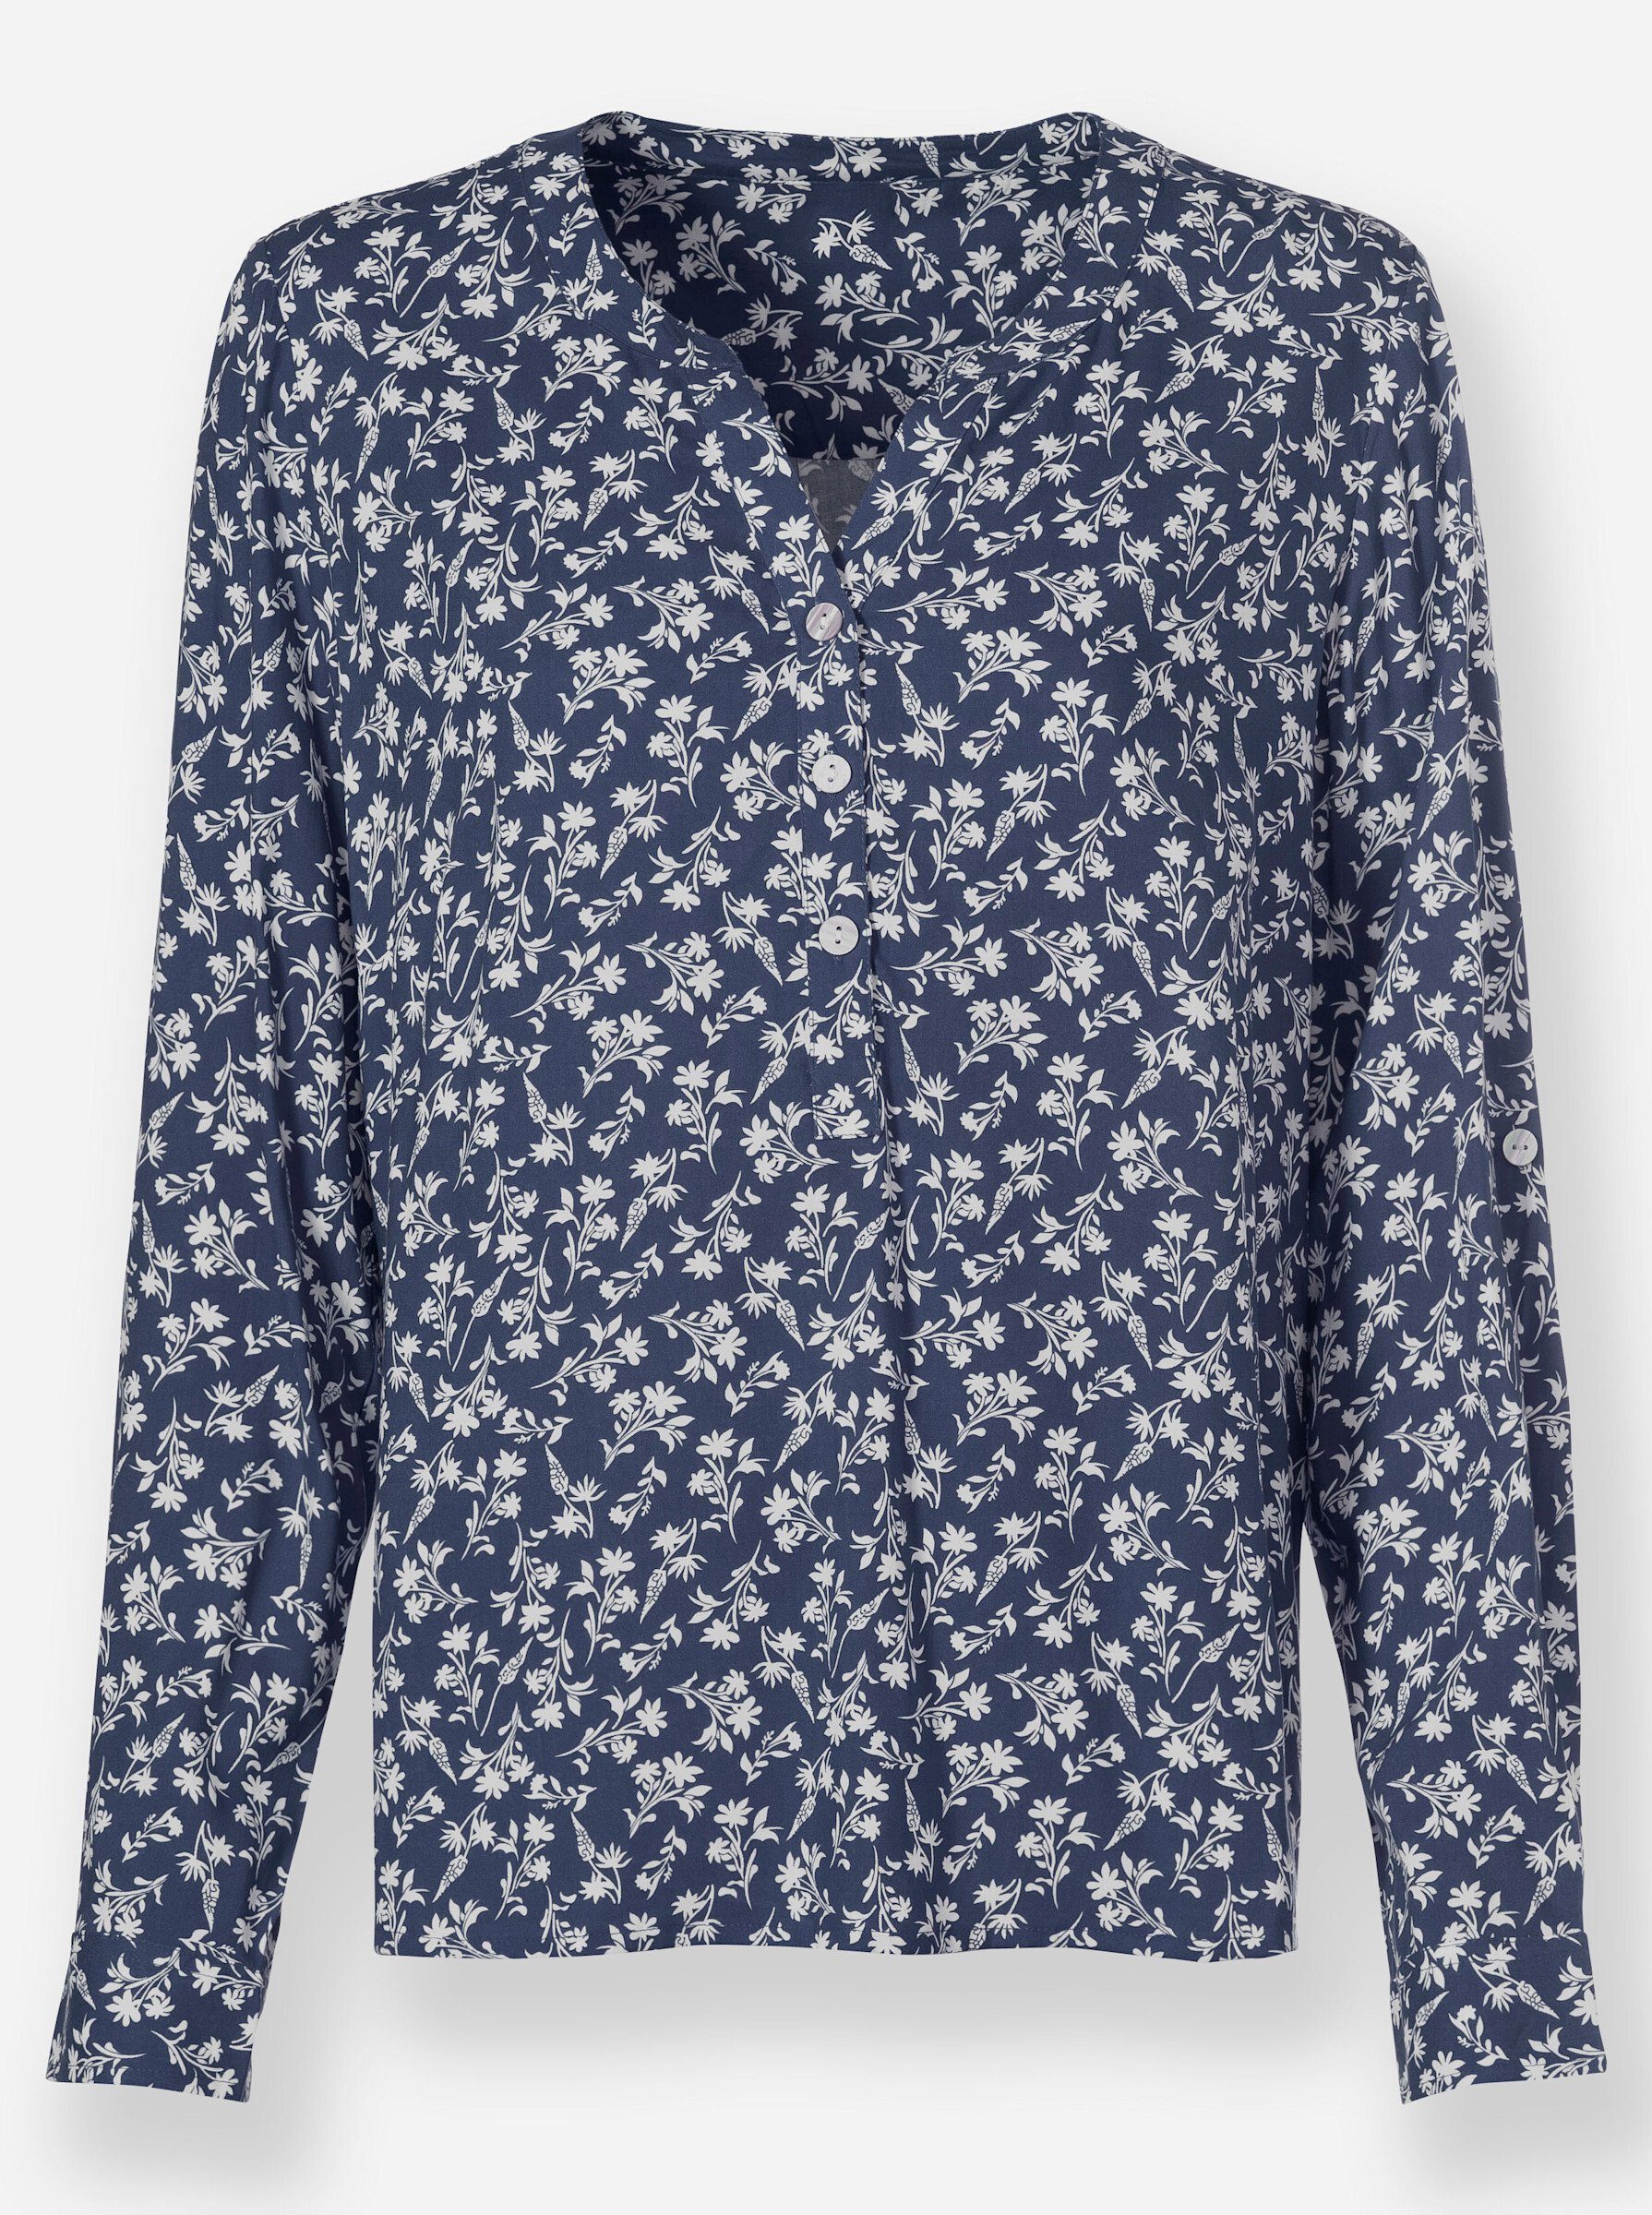 rauchblau-weiß-bedruckt WEIDEN Bluse WITT Klassische